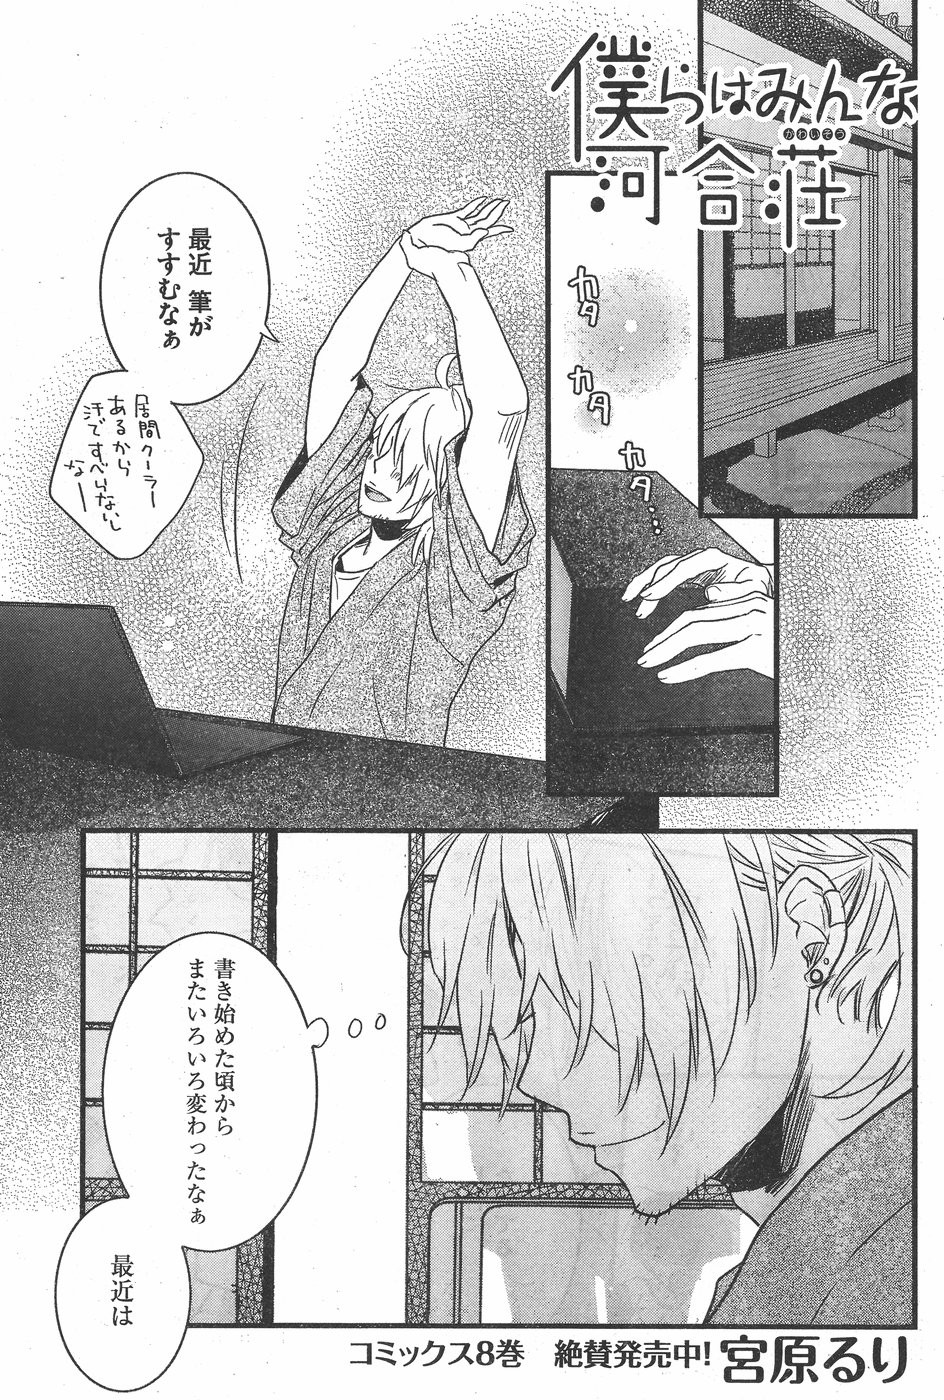 Bokura wa Minna Kawaisou - Chapter 72 - Page 1